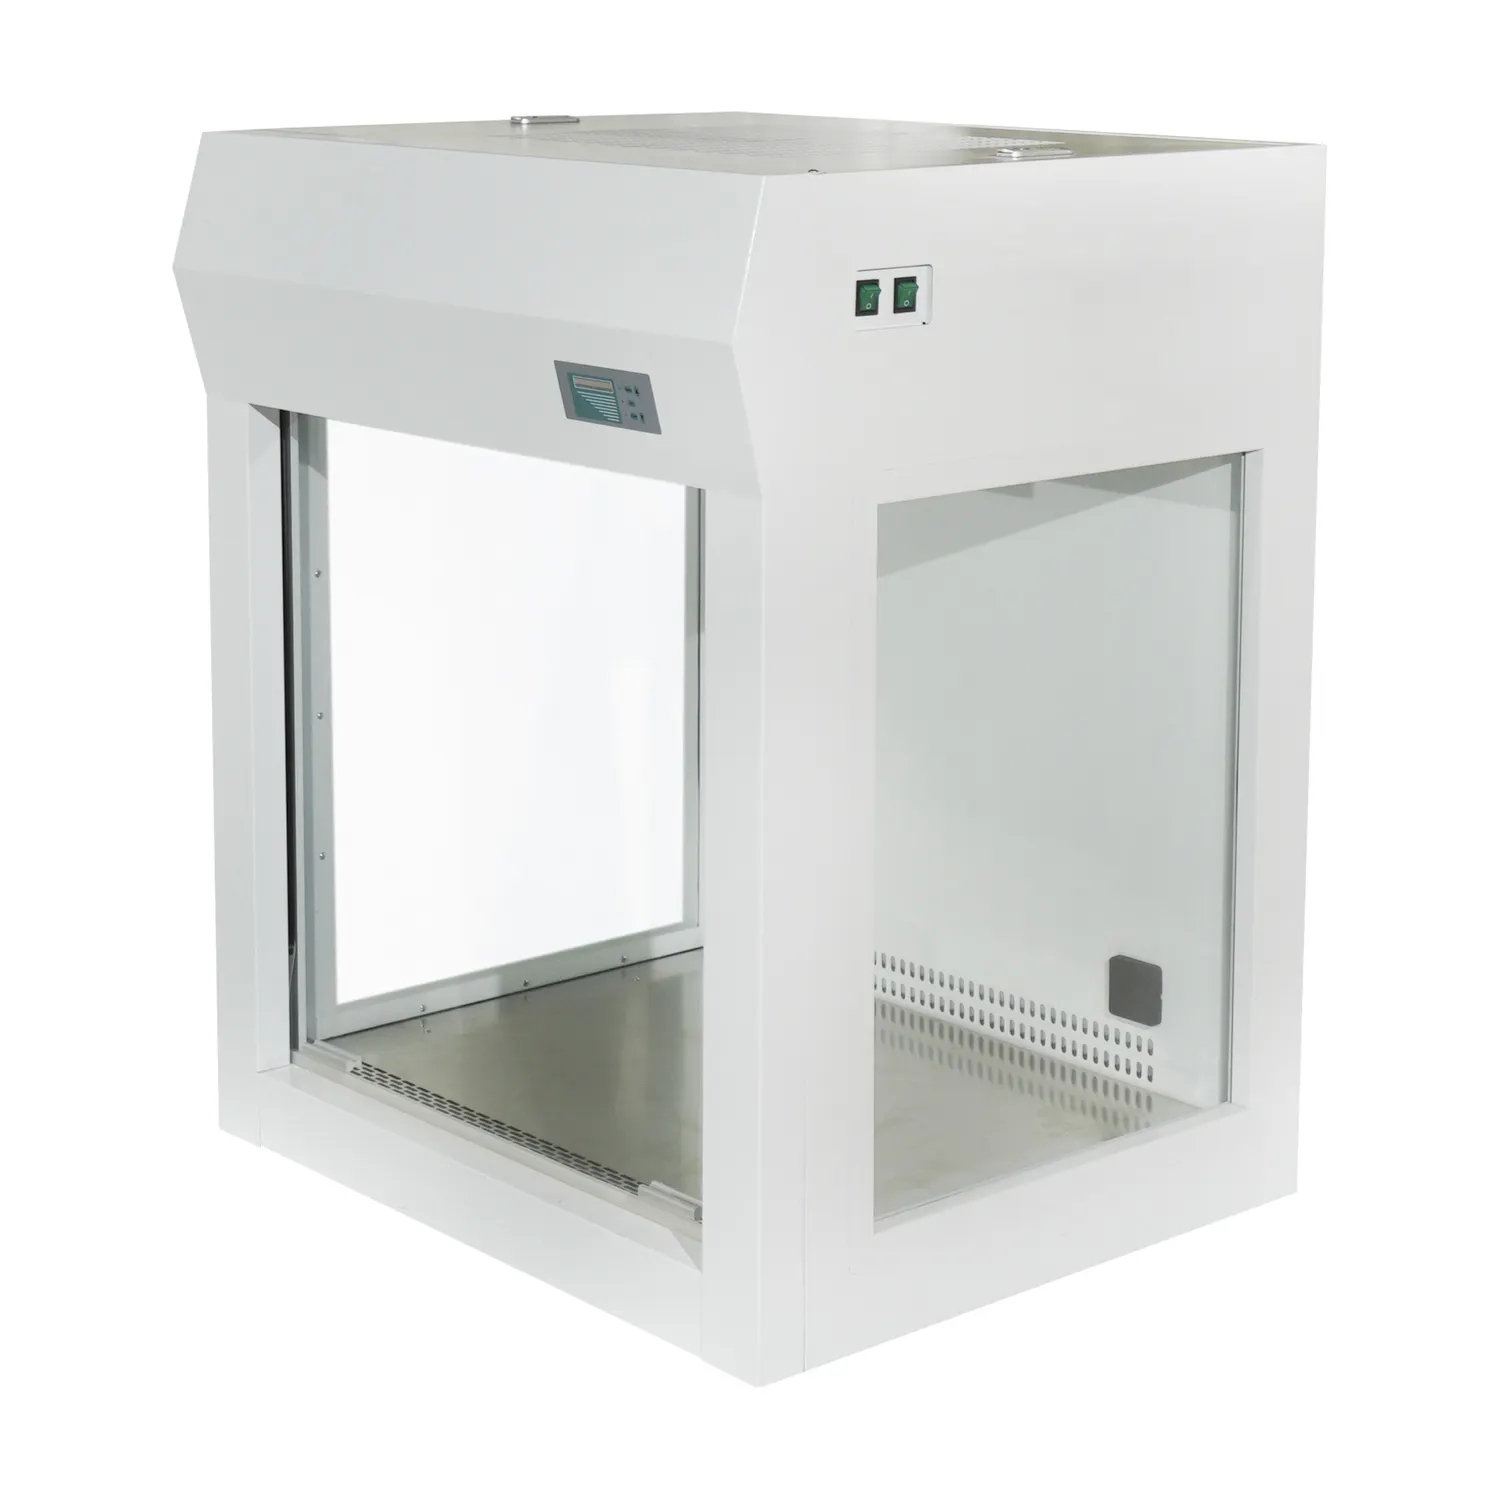 IKEME Nuevos diseños Clase 100 Filtro de escritorio de laboratorio Flujo laminar Micología Gabinete de flujo de aire laminar vertical Campana de flujo laminar HEPA